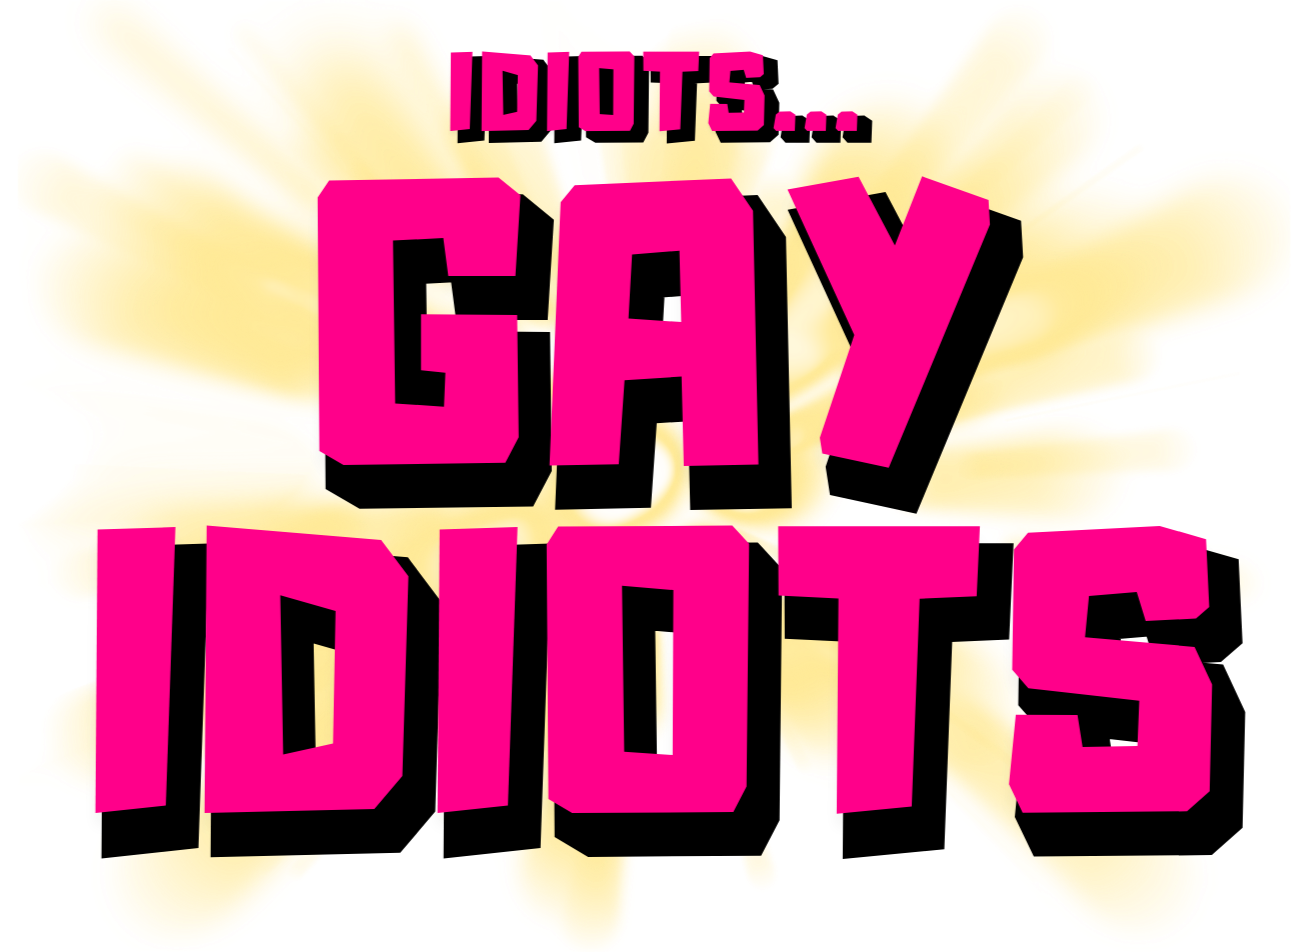 idiots. gay idiots. logo